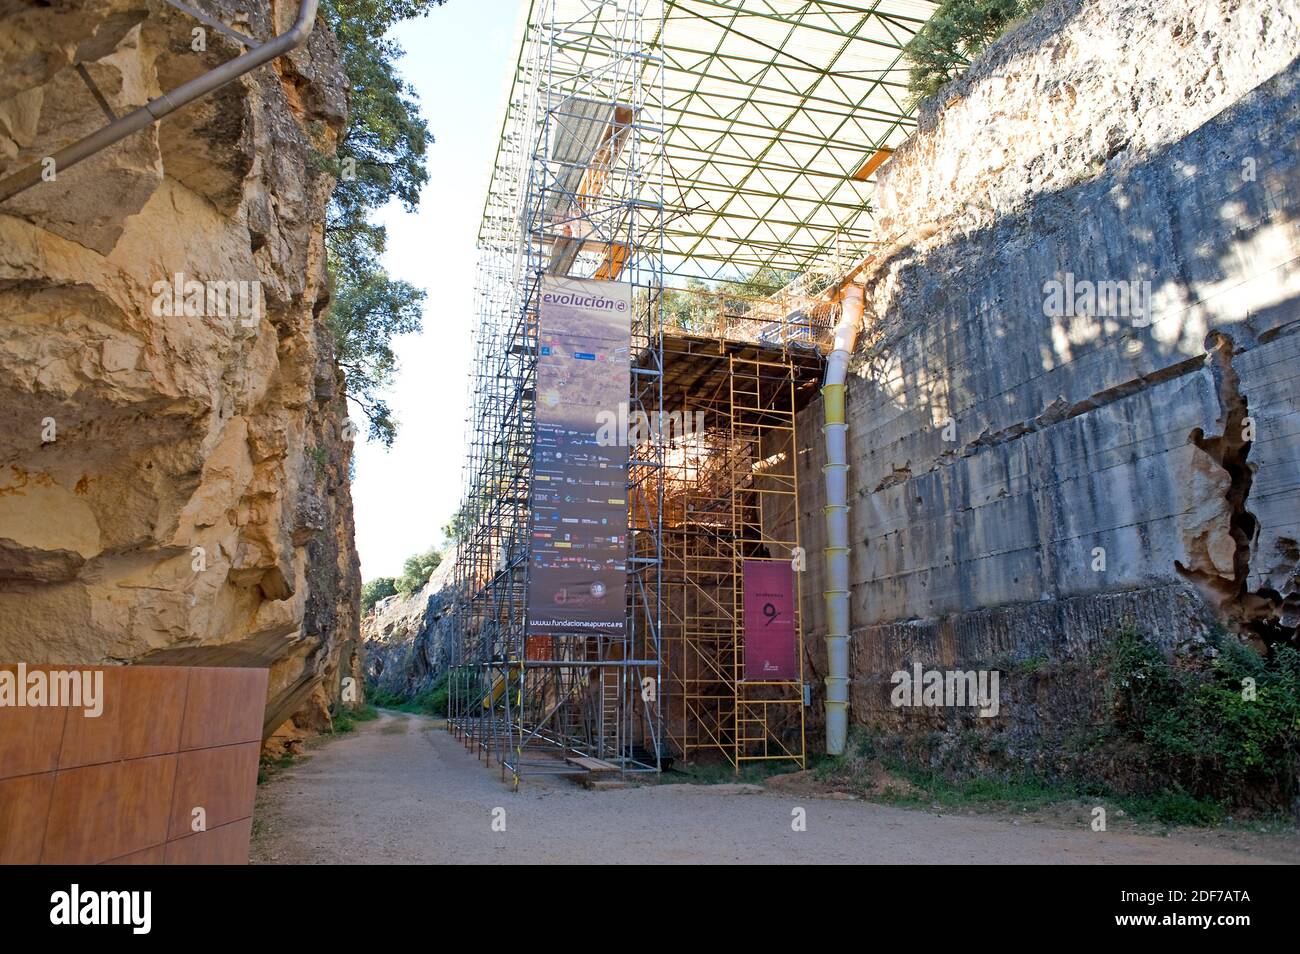 Sitio arqueológico de Atapuerca Patrimonio de la Humanidad. Provincia de Burgos, Castilla y León, España. Foto de stock